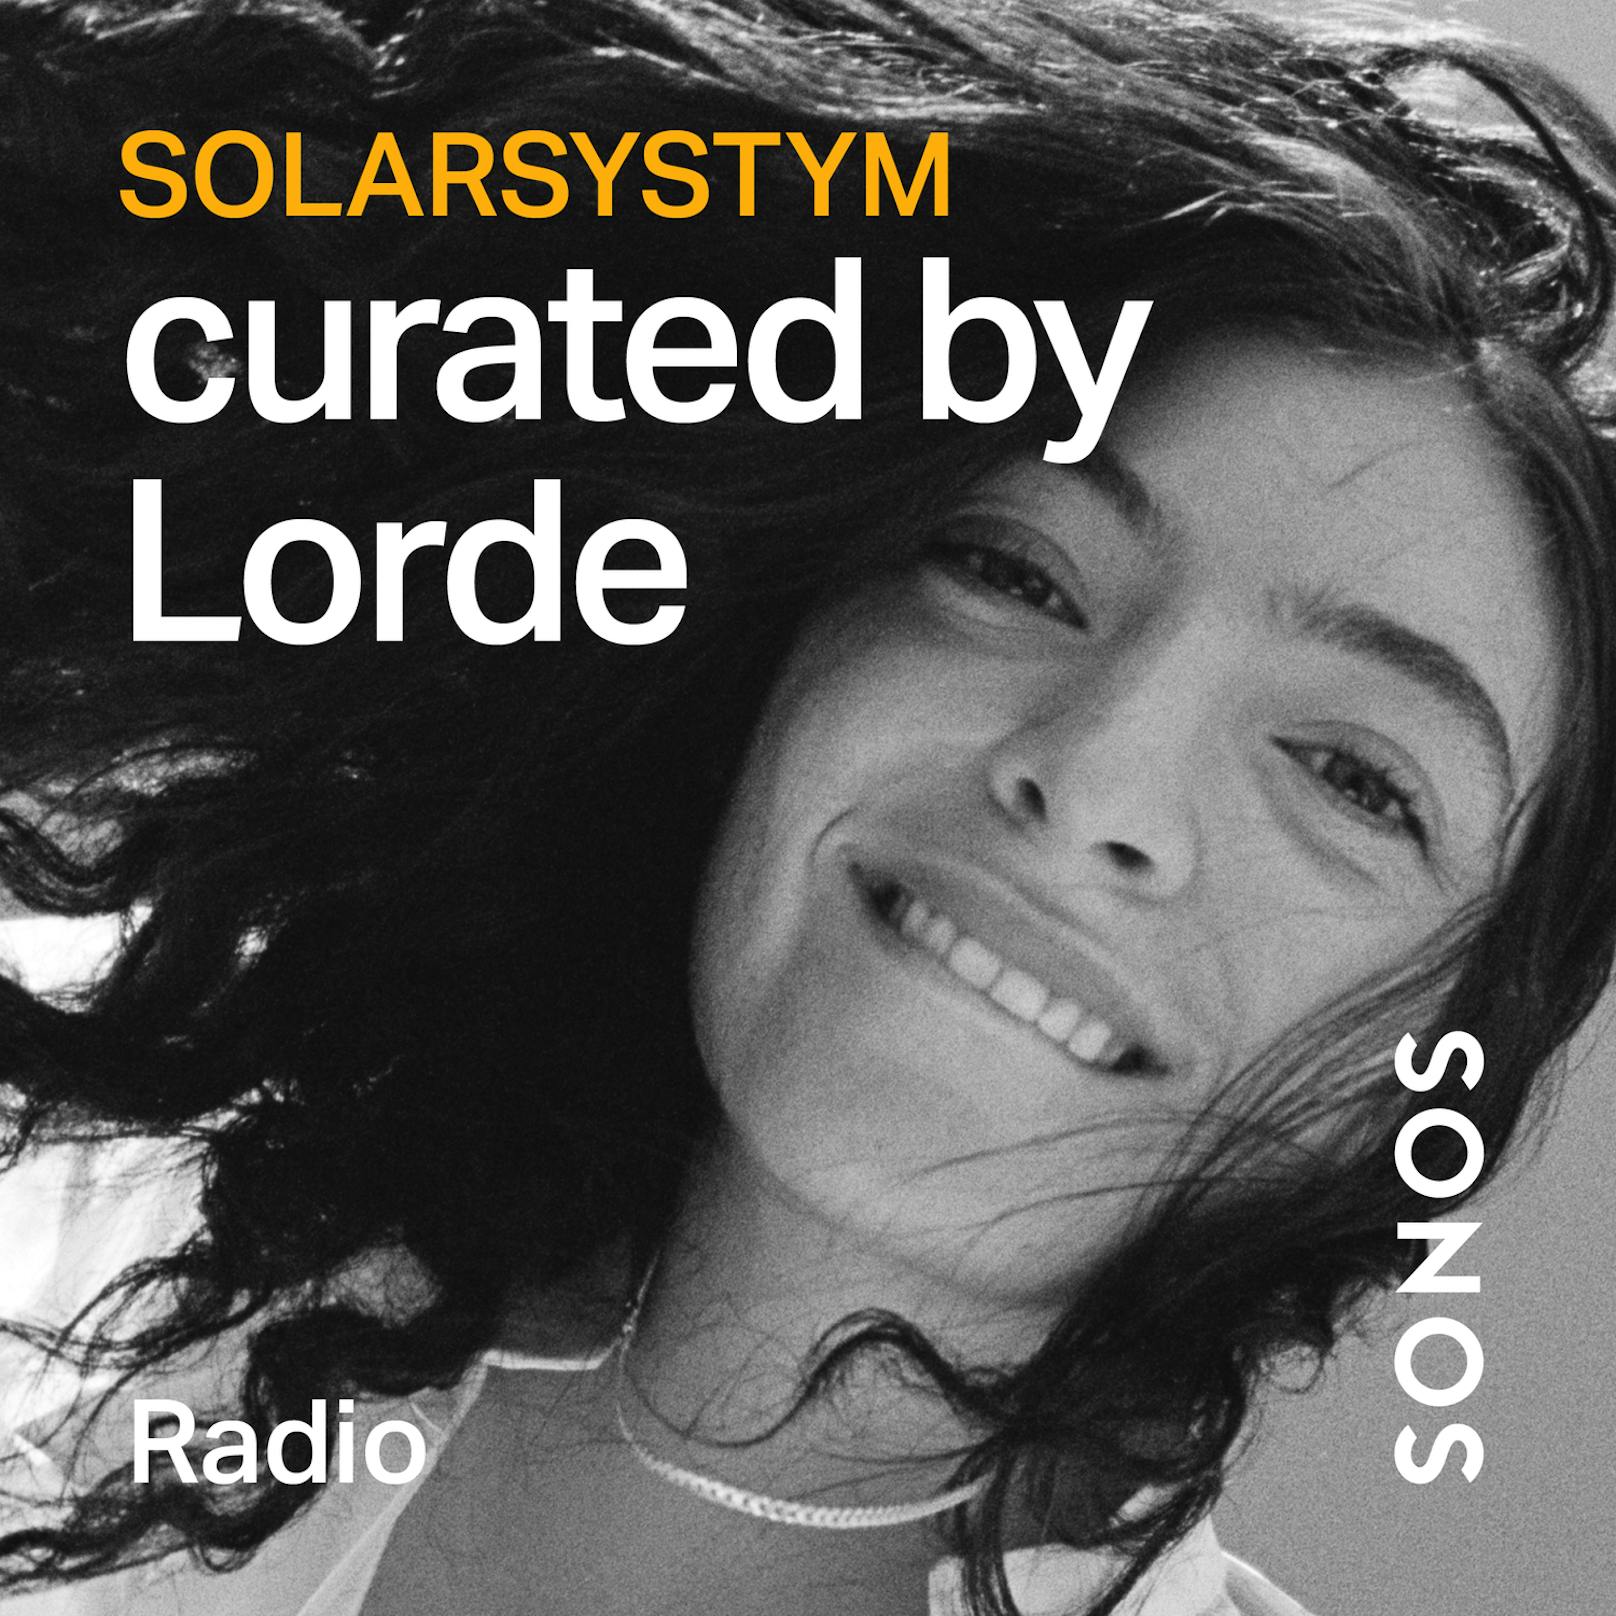 Und: Eine exklusiv von der preisgekrönten Künstlerin Lorde kuratierte Radio Station feiert auf Sonos Radio ihre Premiere. Auf "Solarsystym" können Fans die Songs und ...